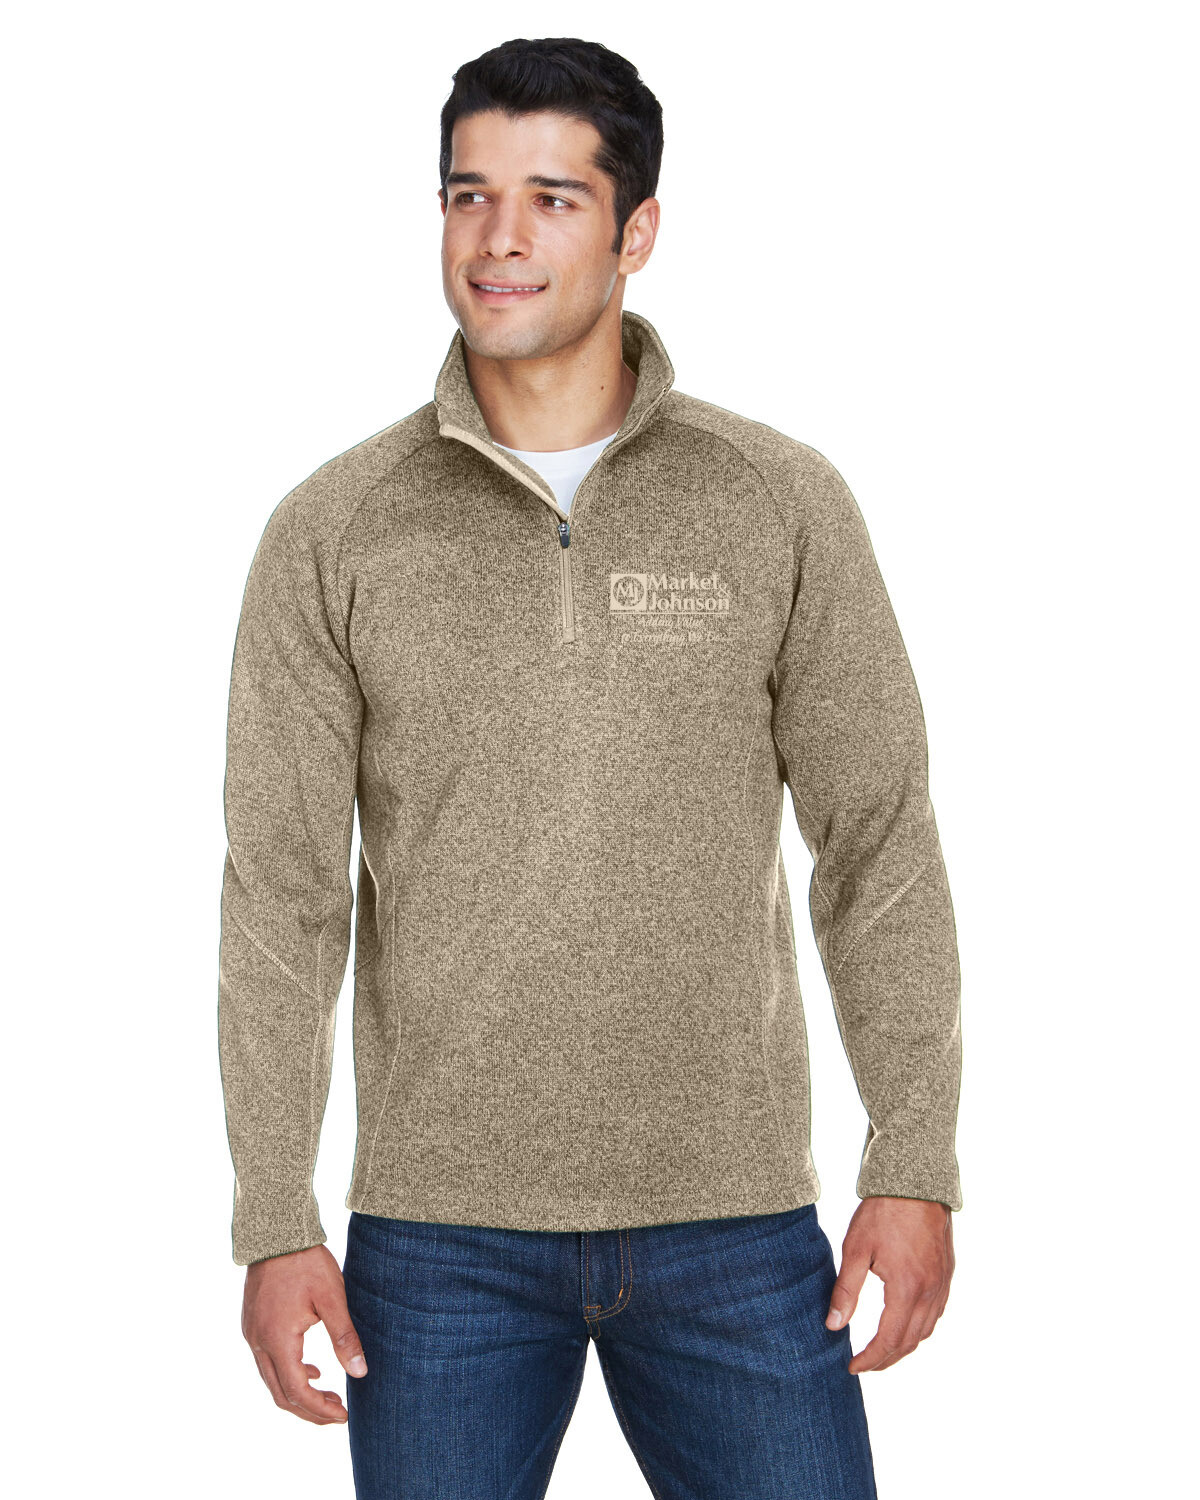 Devon & Jones Men's Adult Bristol Sweater Fleece Quarter Zip